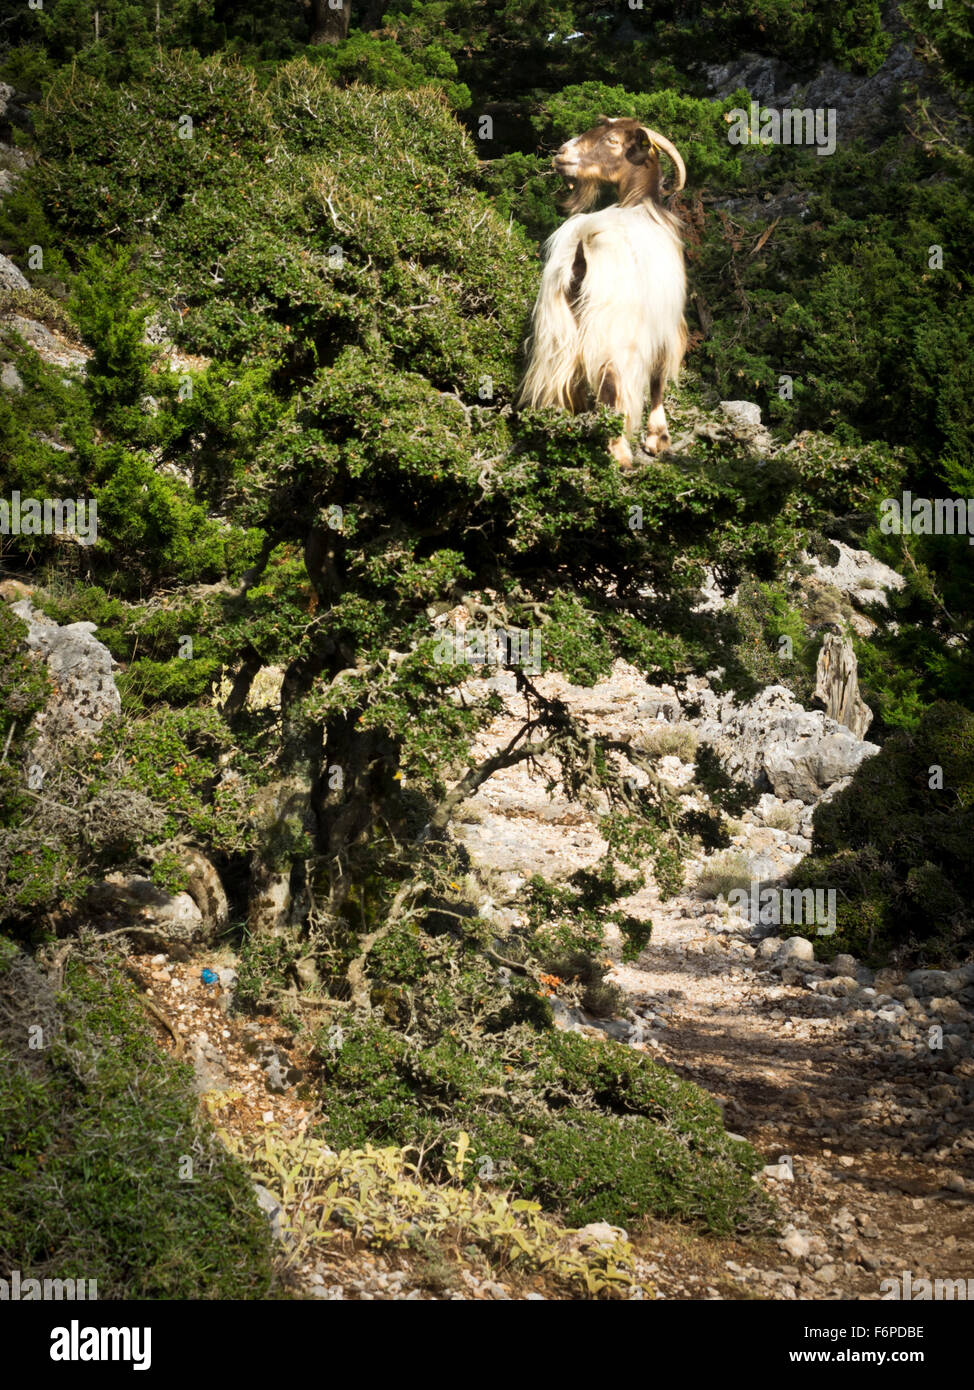 Ziege auf einem Baum, E4 Europäischer Fernwanderweg Foto de stock